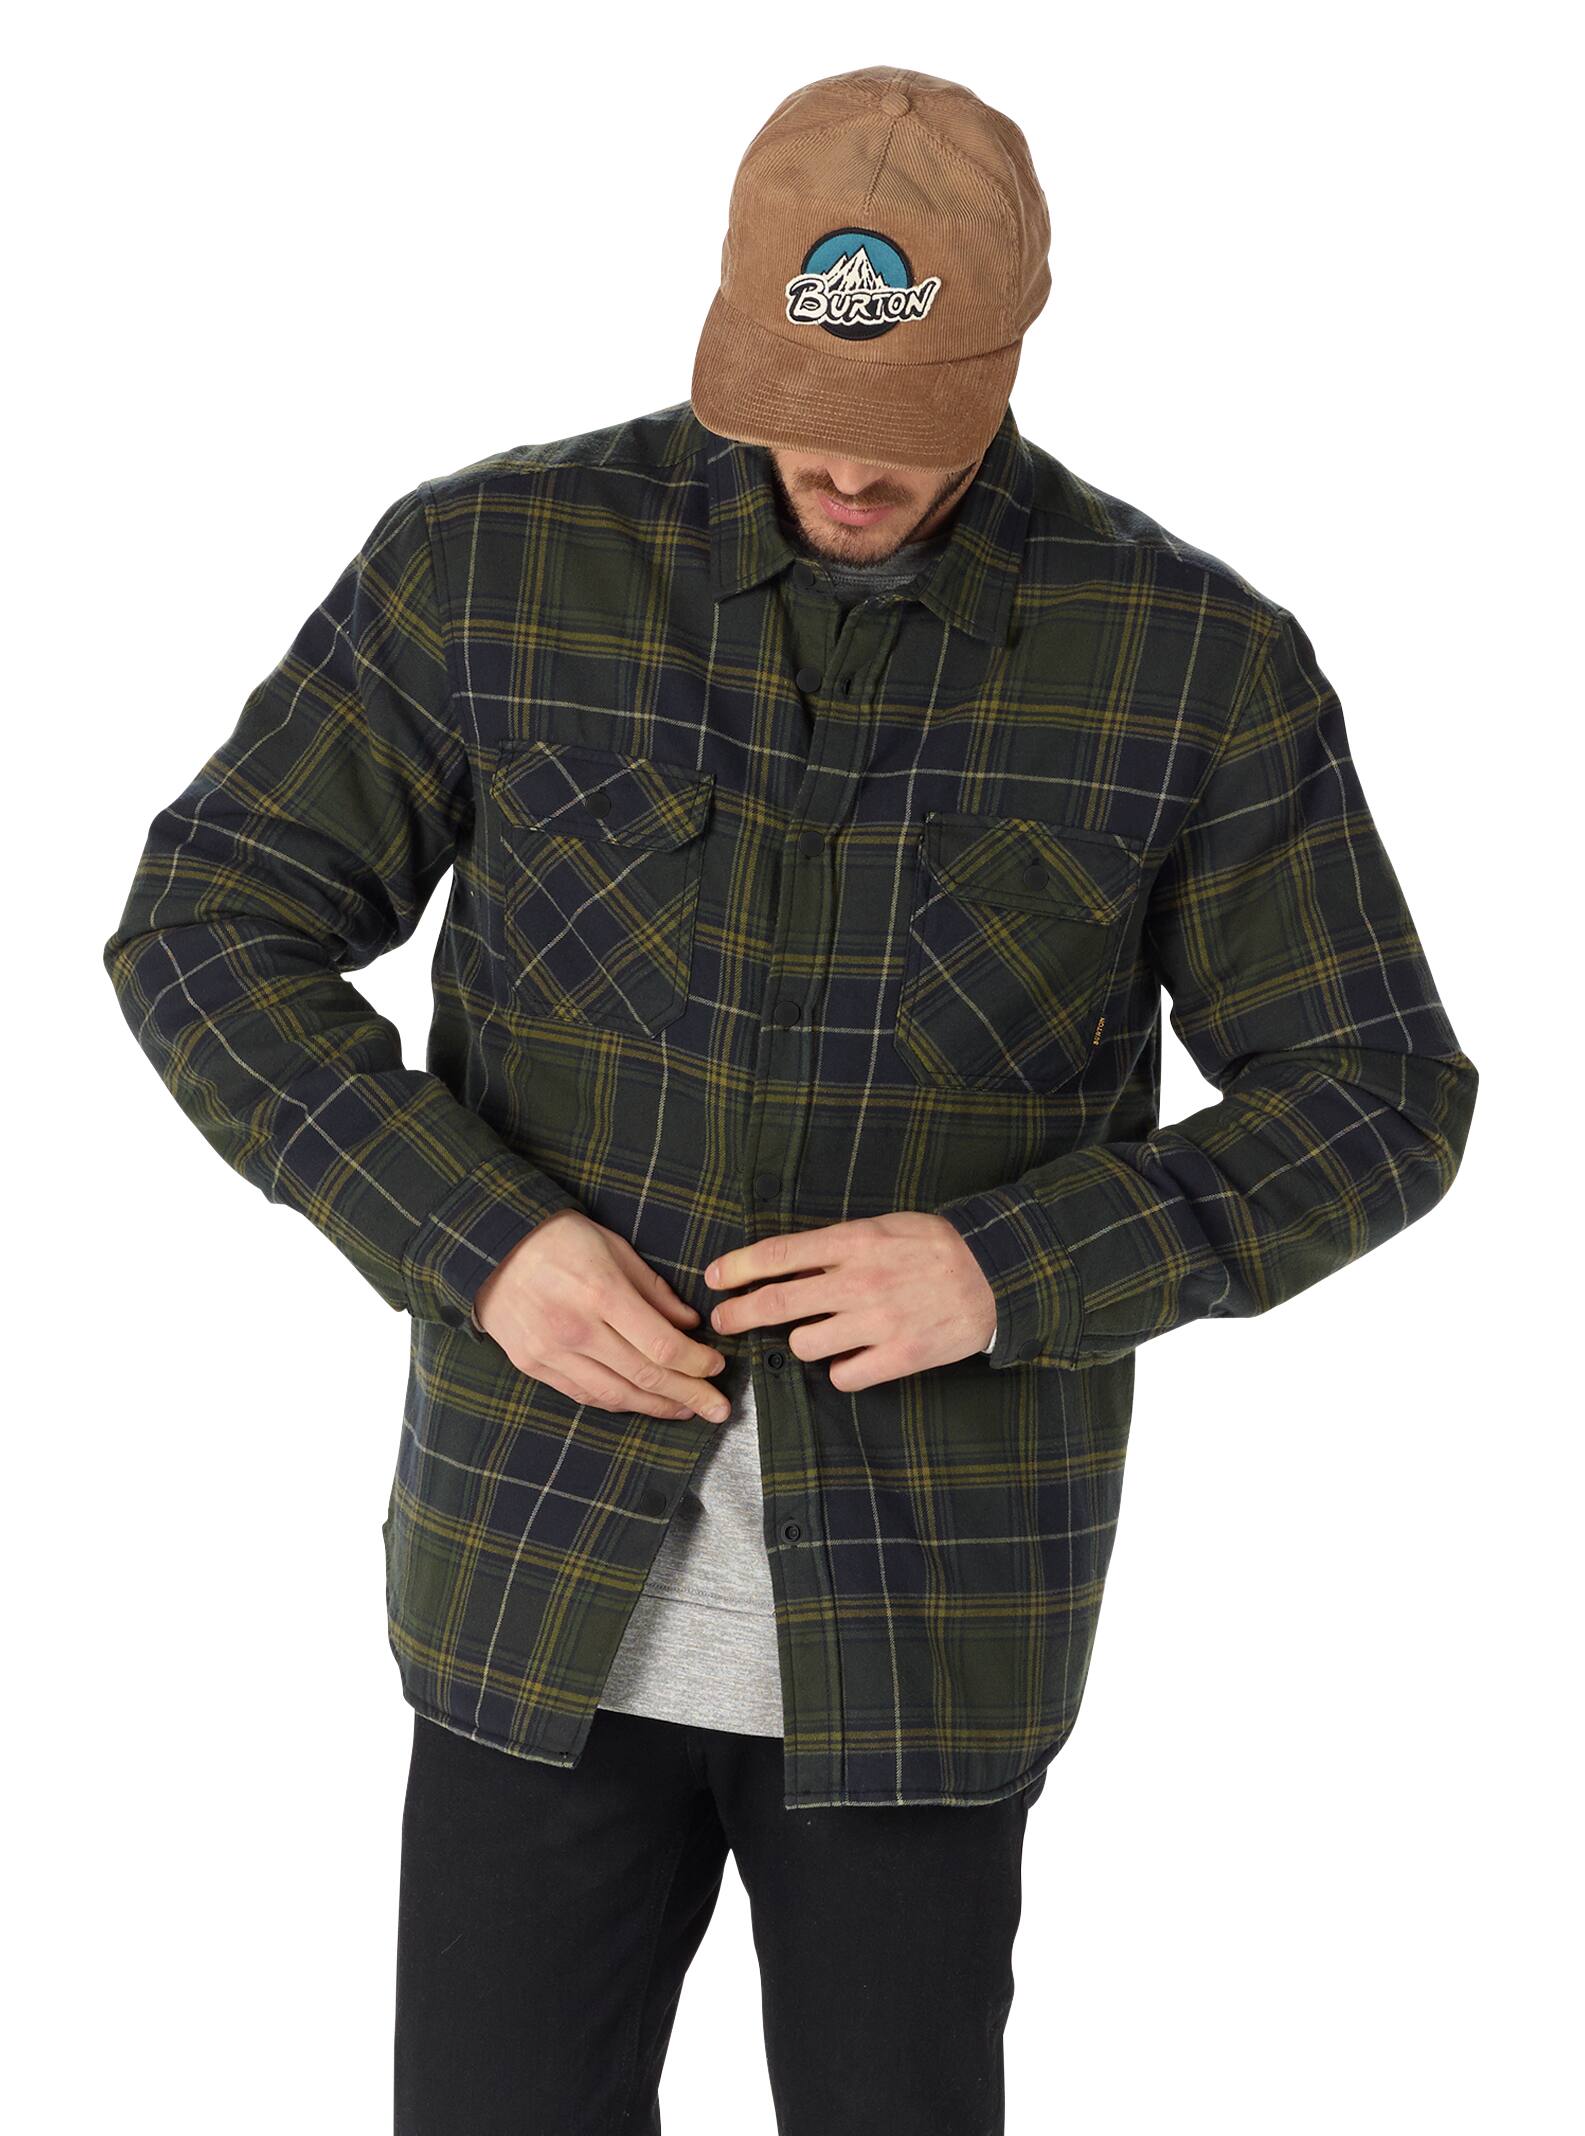 burton flannel snowboard jacket